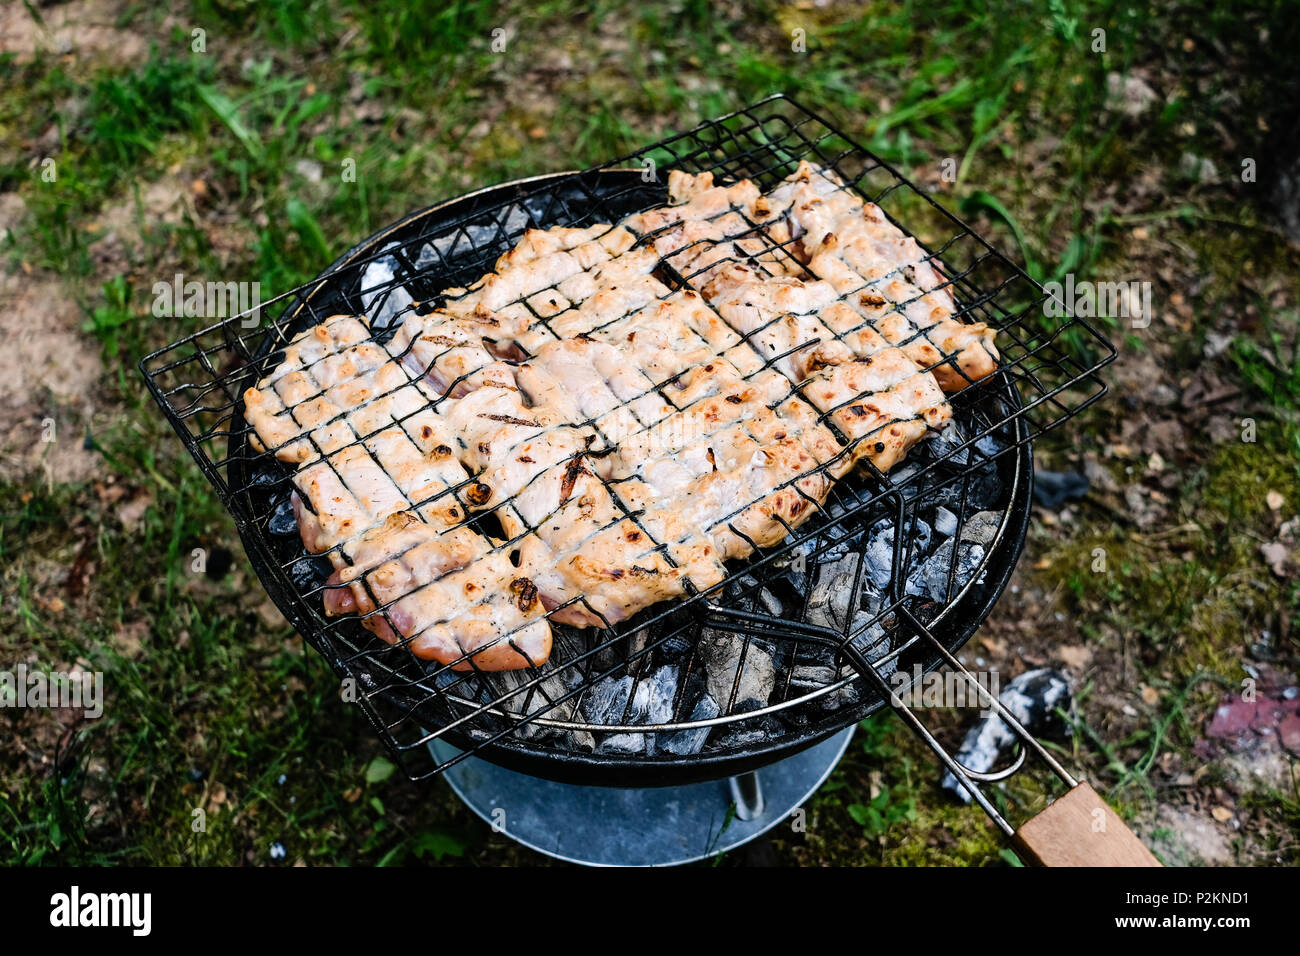 La cottura alla griglia una deliziosa varietà di carne su barbecue